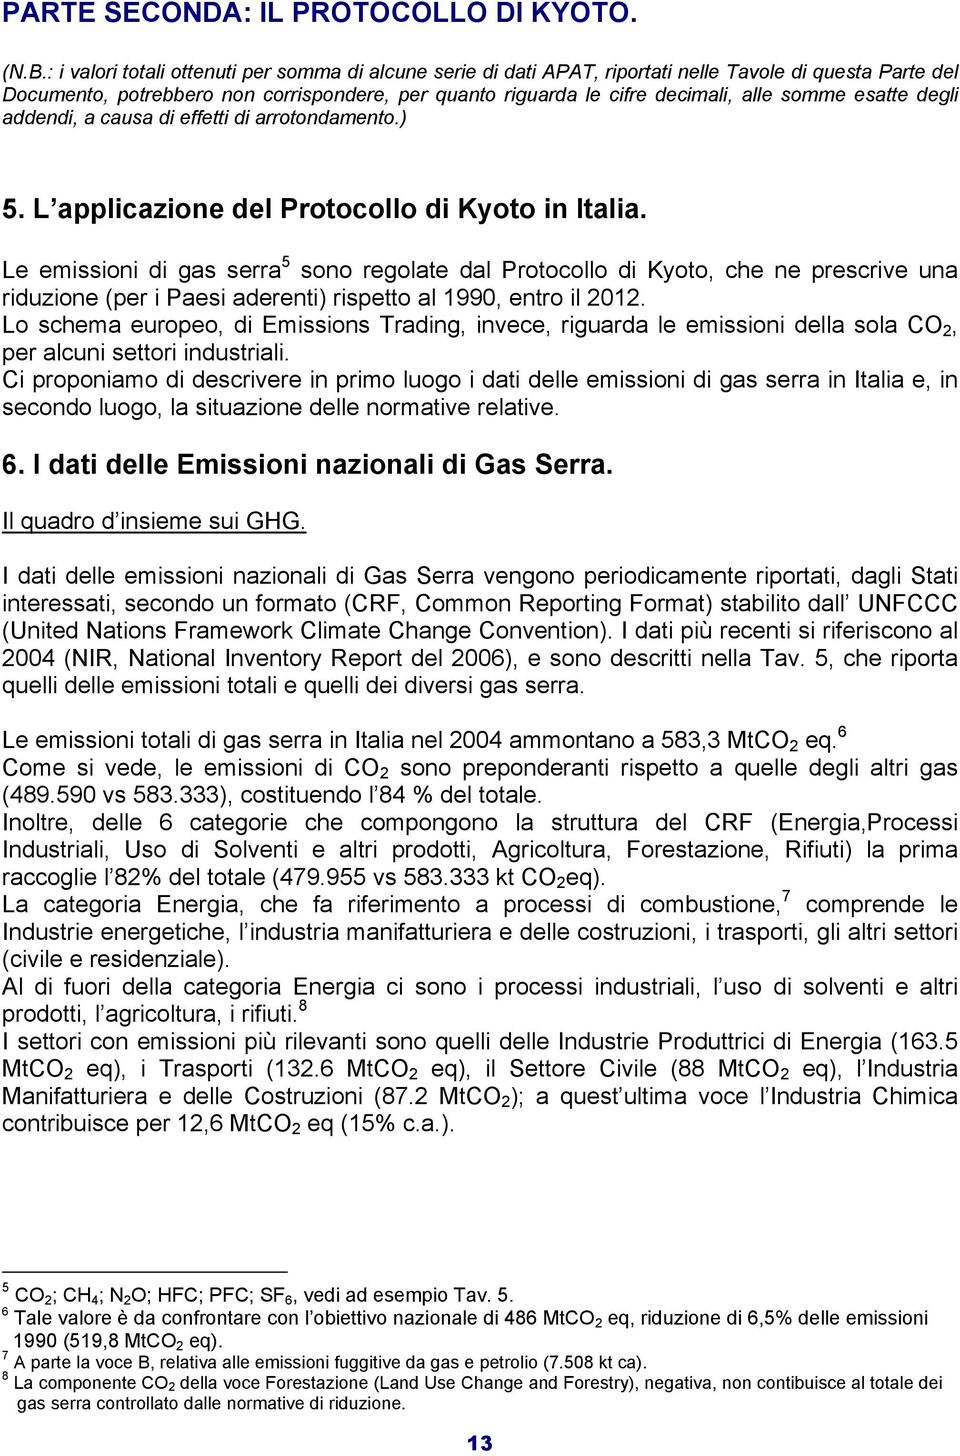 somme esatte degli addendi, a causa di effetti di arrotondamento.) 5. L applicazione del Protocollo di Kyoto in Italia.